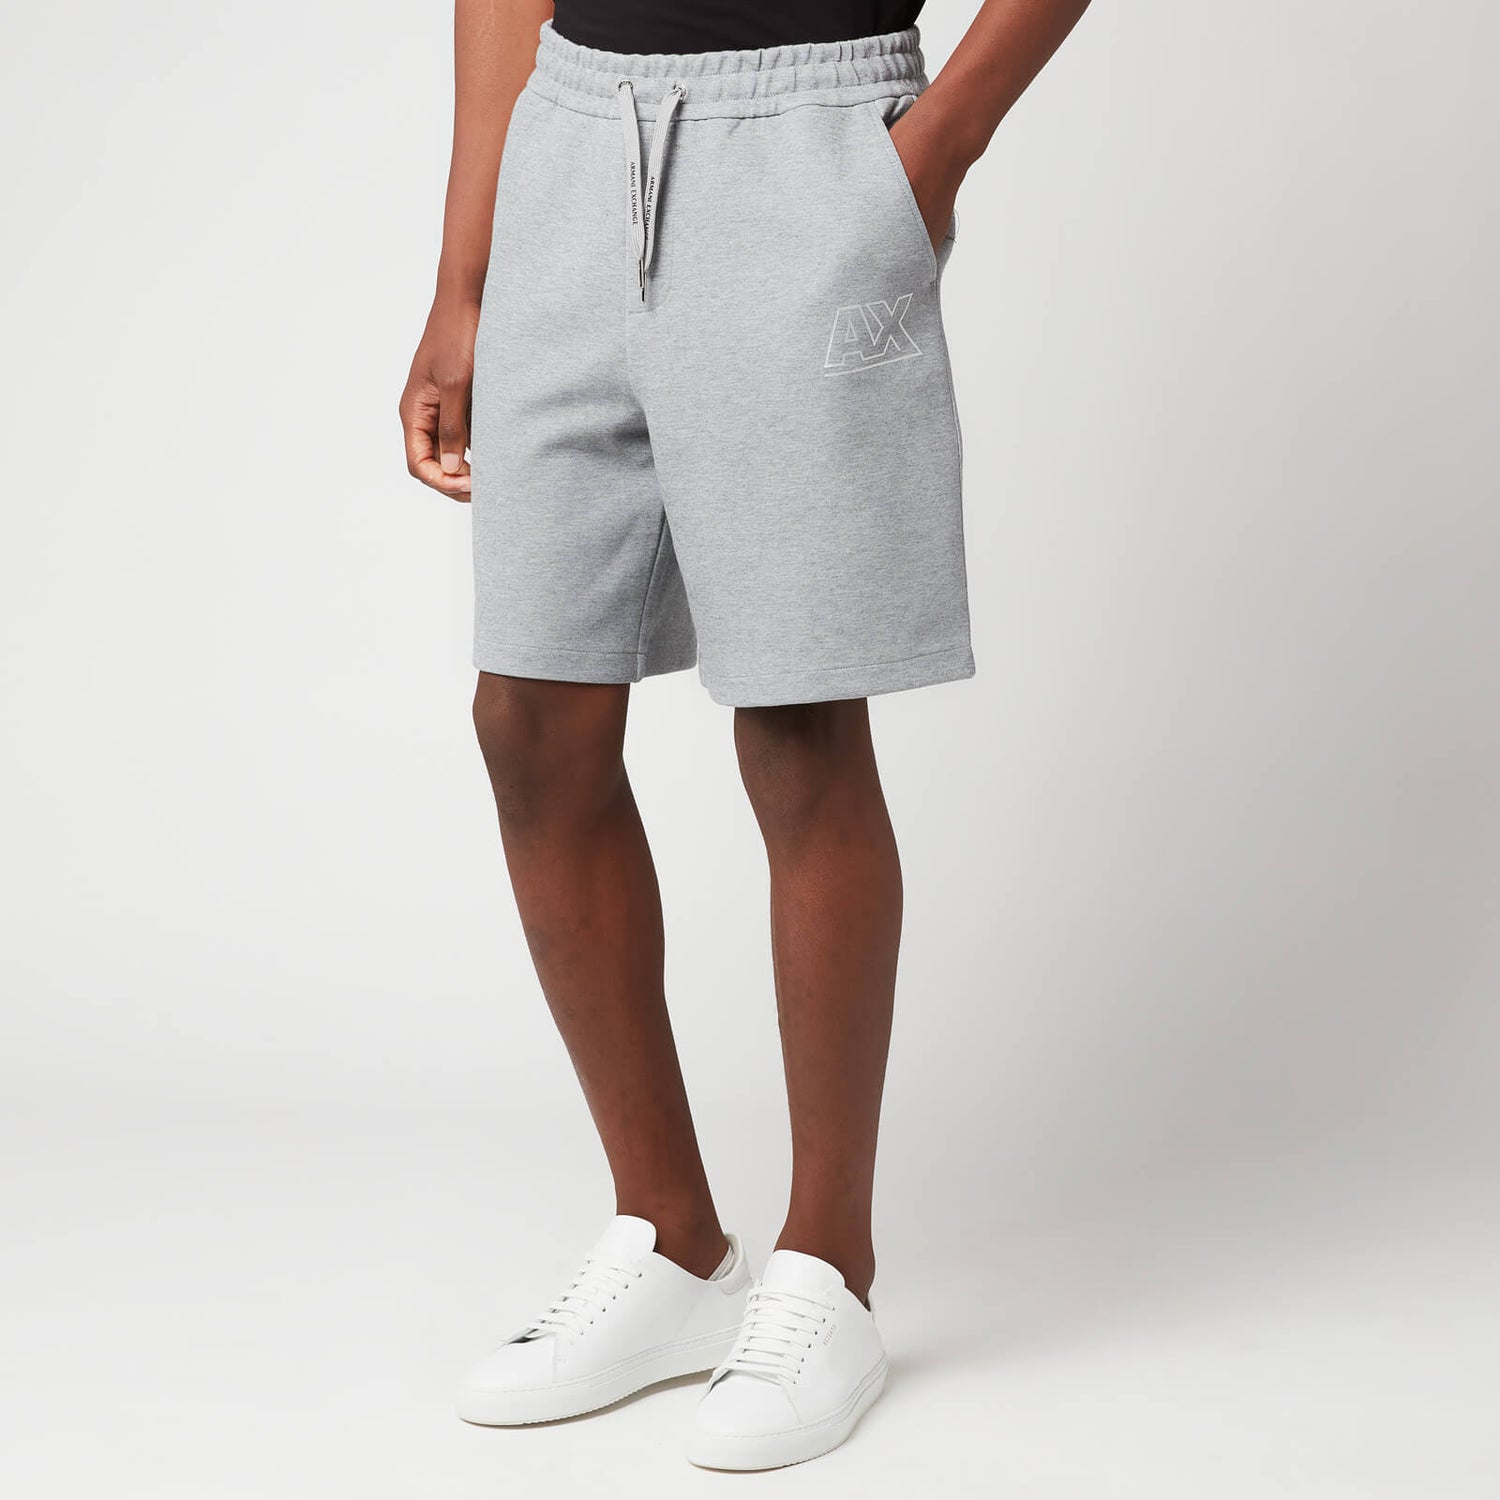 Armani Exchange Men's Sweat Shorts - Grey Melange